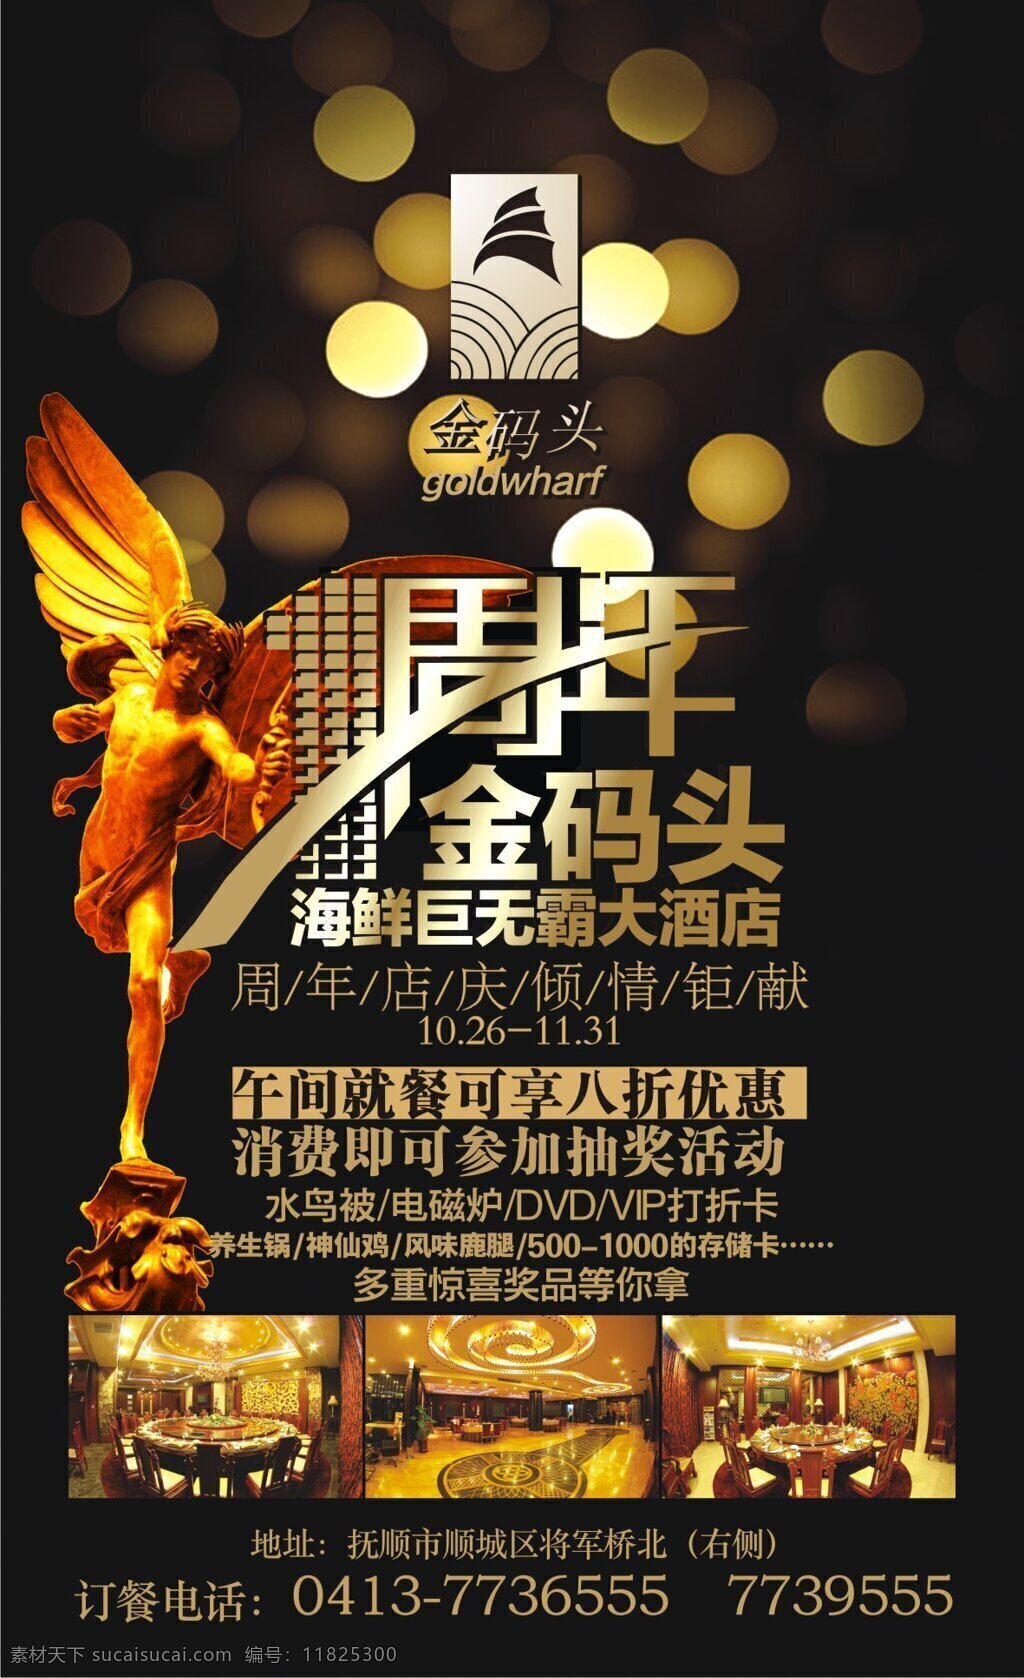 酒店 周年庆 活动 海报 矢量 酒店活动 周年庆海报 天使雕像 金黄光斑 海鲜 免费 其他海报设计